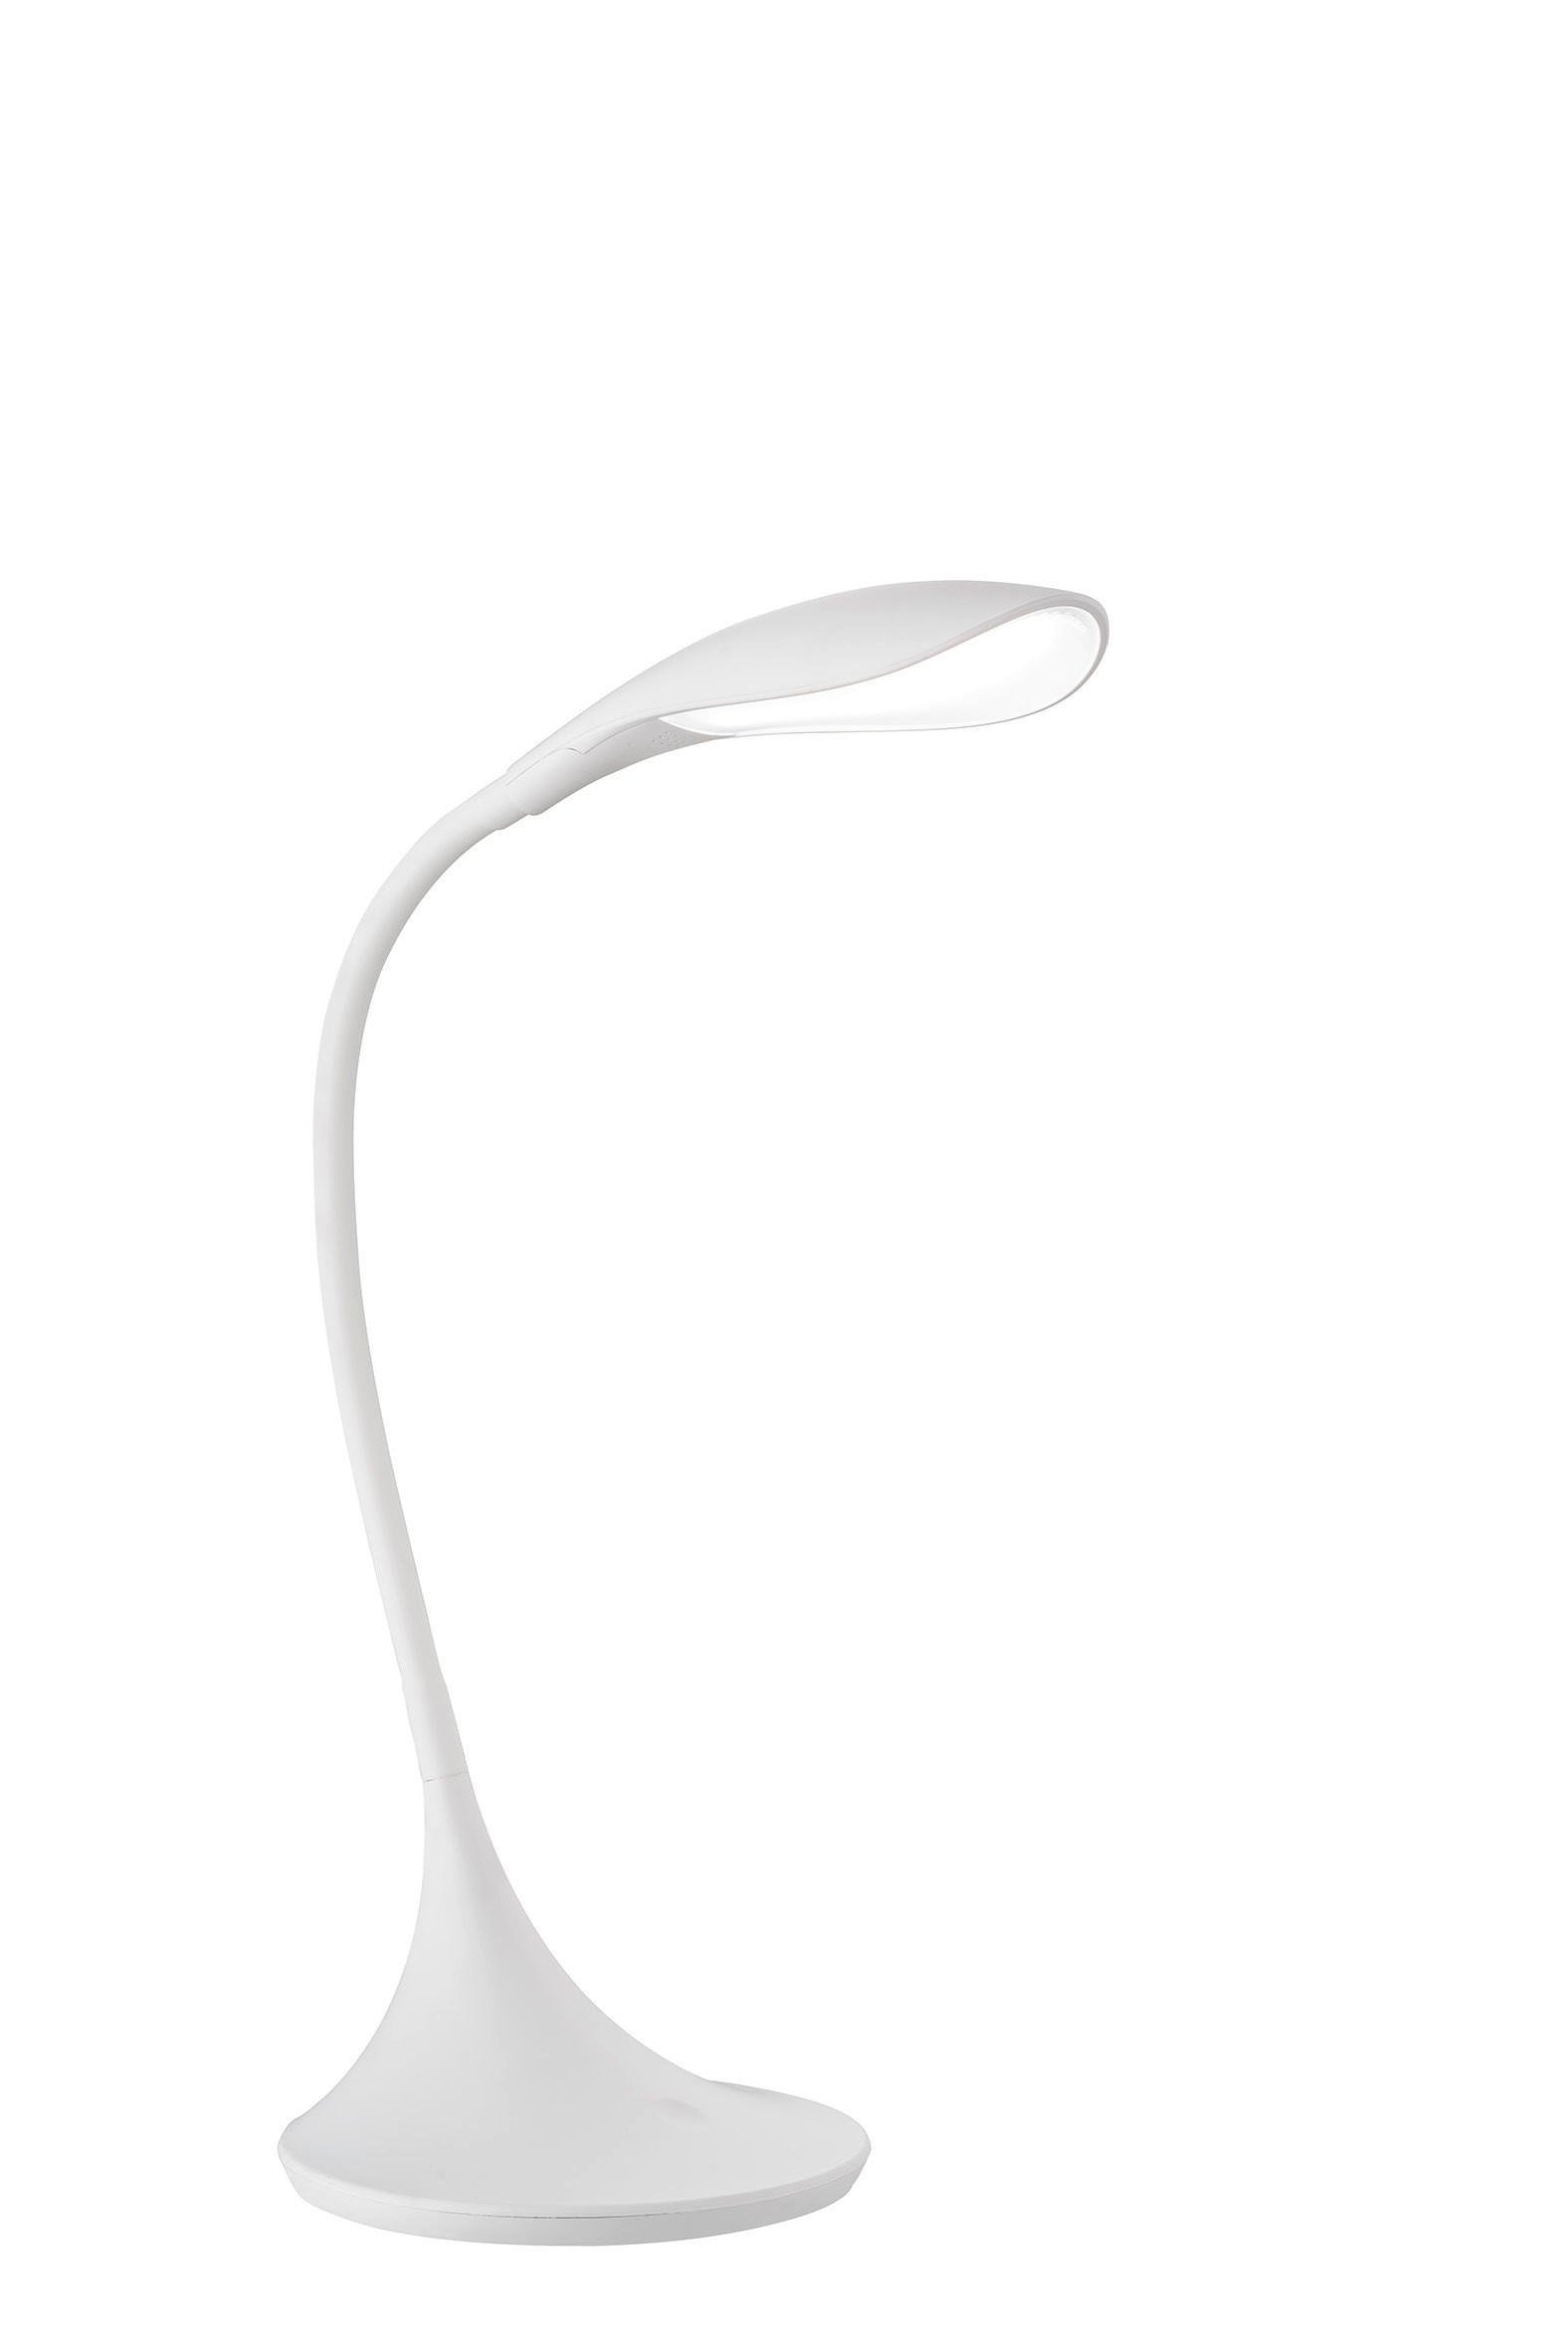 LED-SCHREIBTISCHLEUCHTE Nil 17,00/37,50/40,00 cm   - Weiß, Design, Kunststoff (17,00/37,50/40,00cm) - Fischer & Honsel